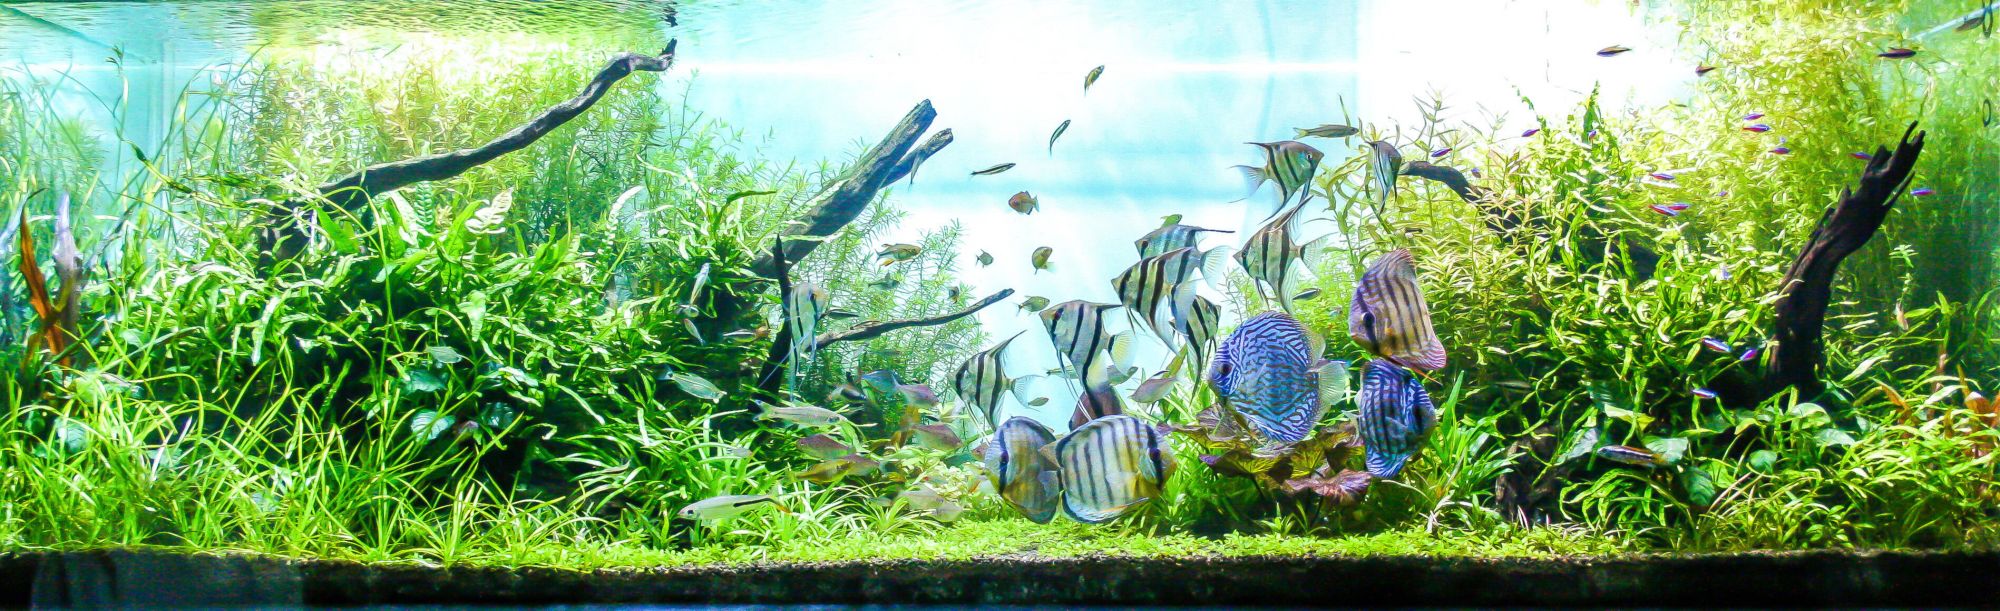 aquarium fish tank aquabed